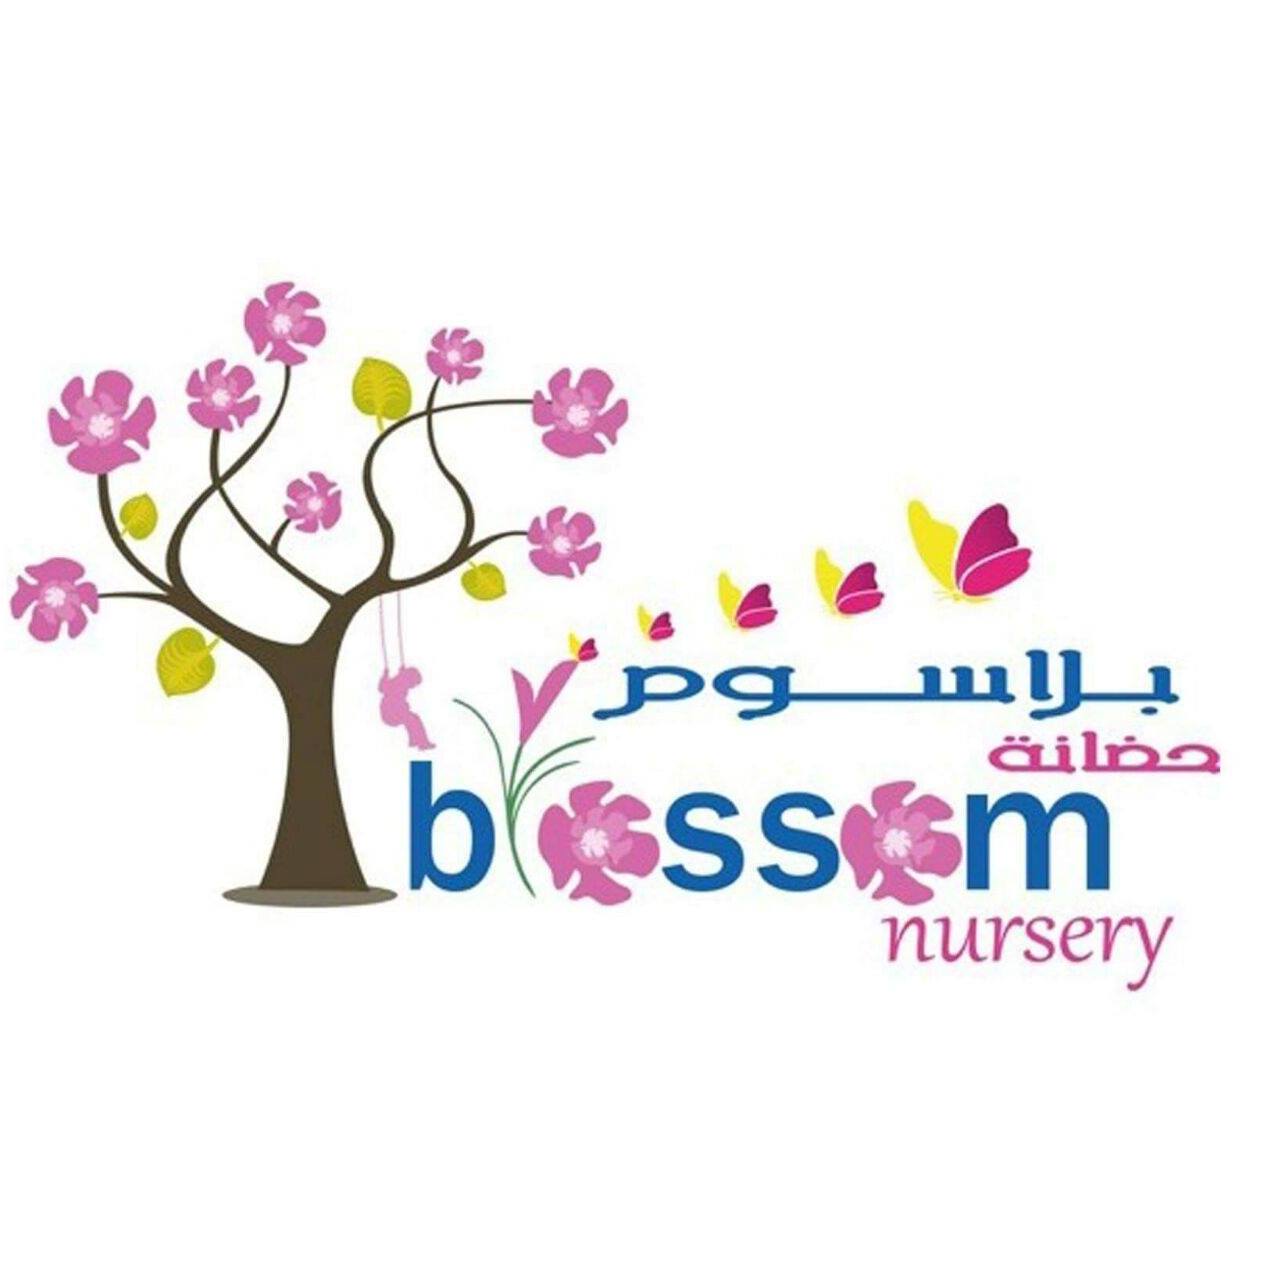 Nursery logo Blossom 2 Nursery